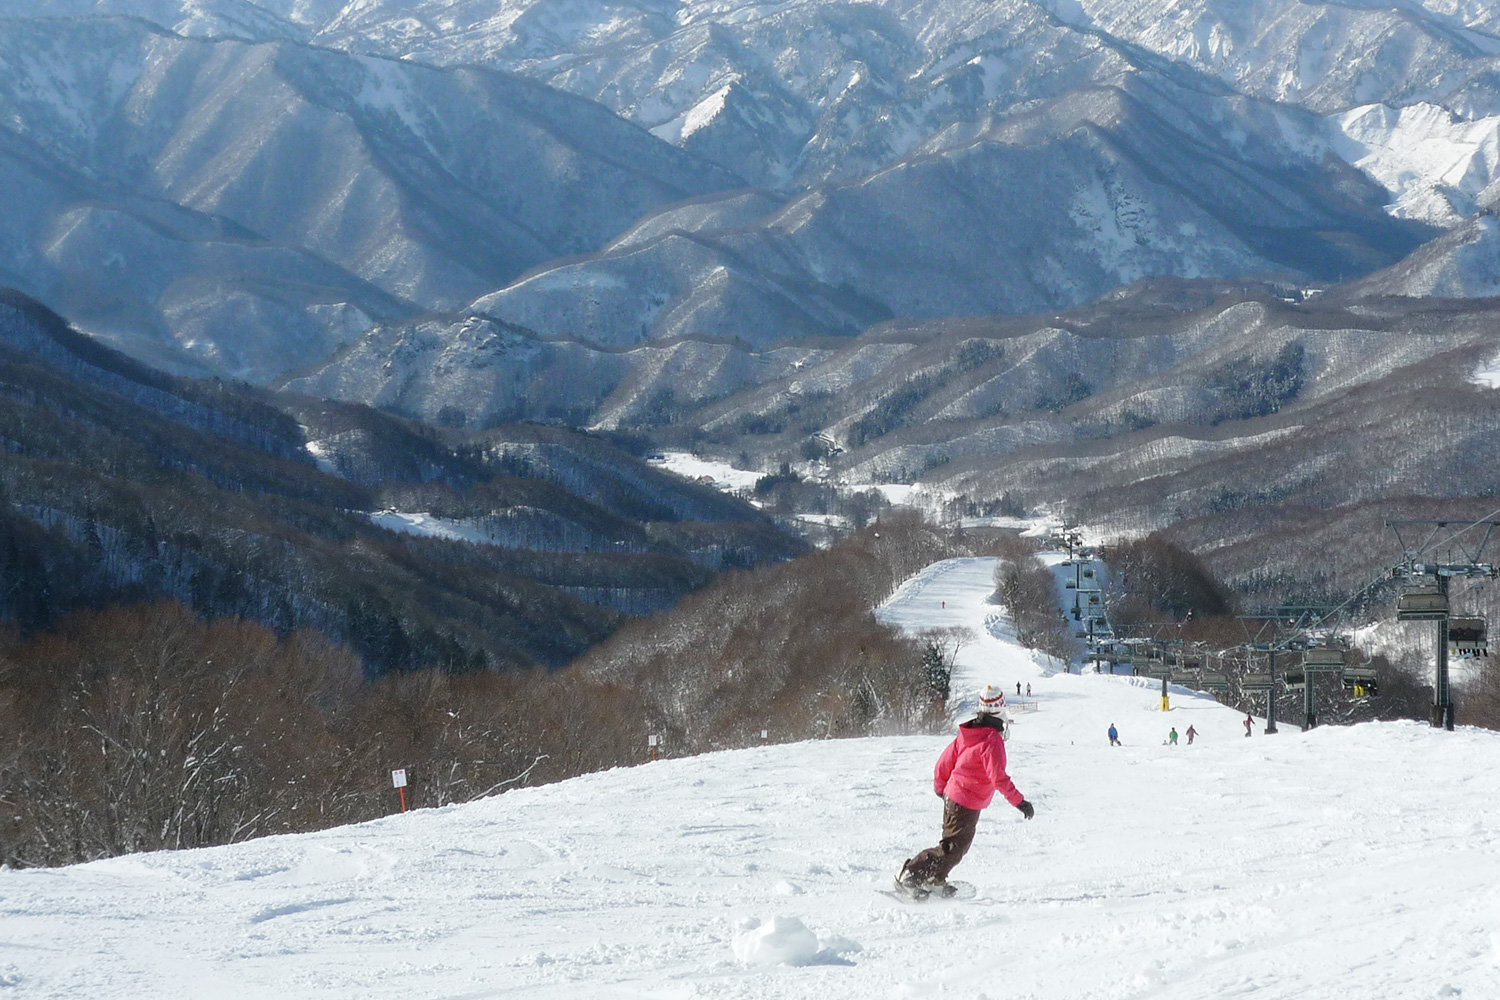 Minakami Kogen Ski Resort